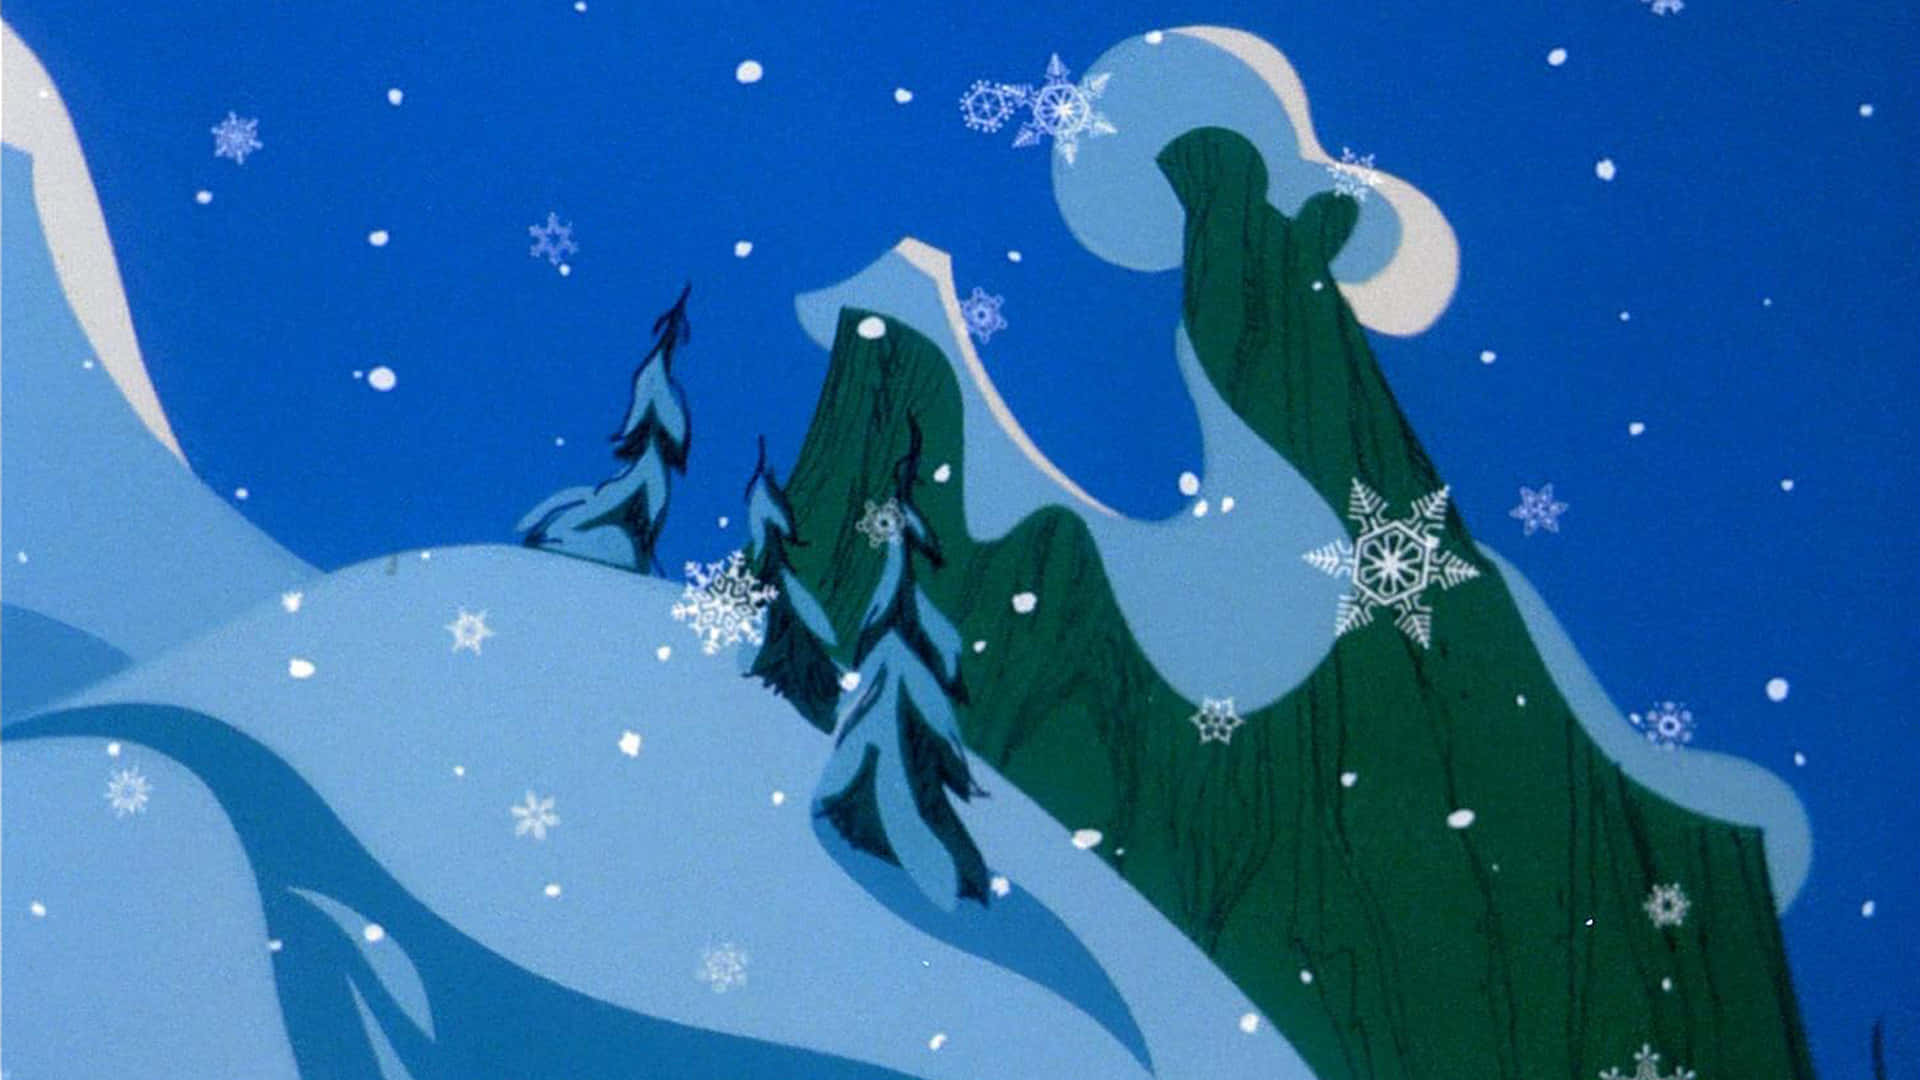 Unaescena De Dibujos Animados Con Nieve Y Copos De Nieve Fondo de pantalla